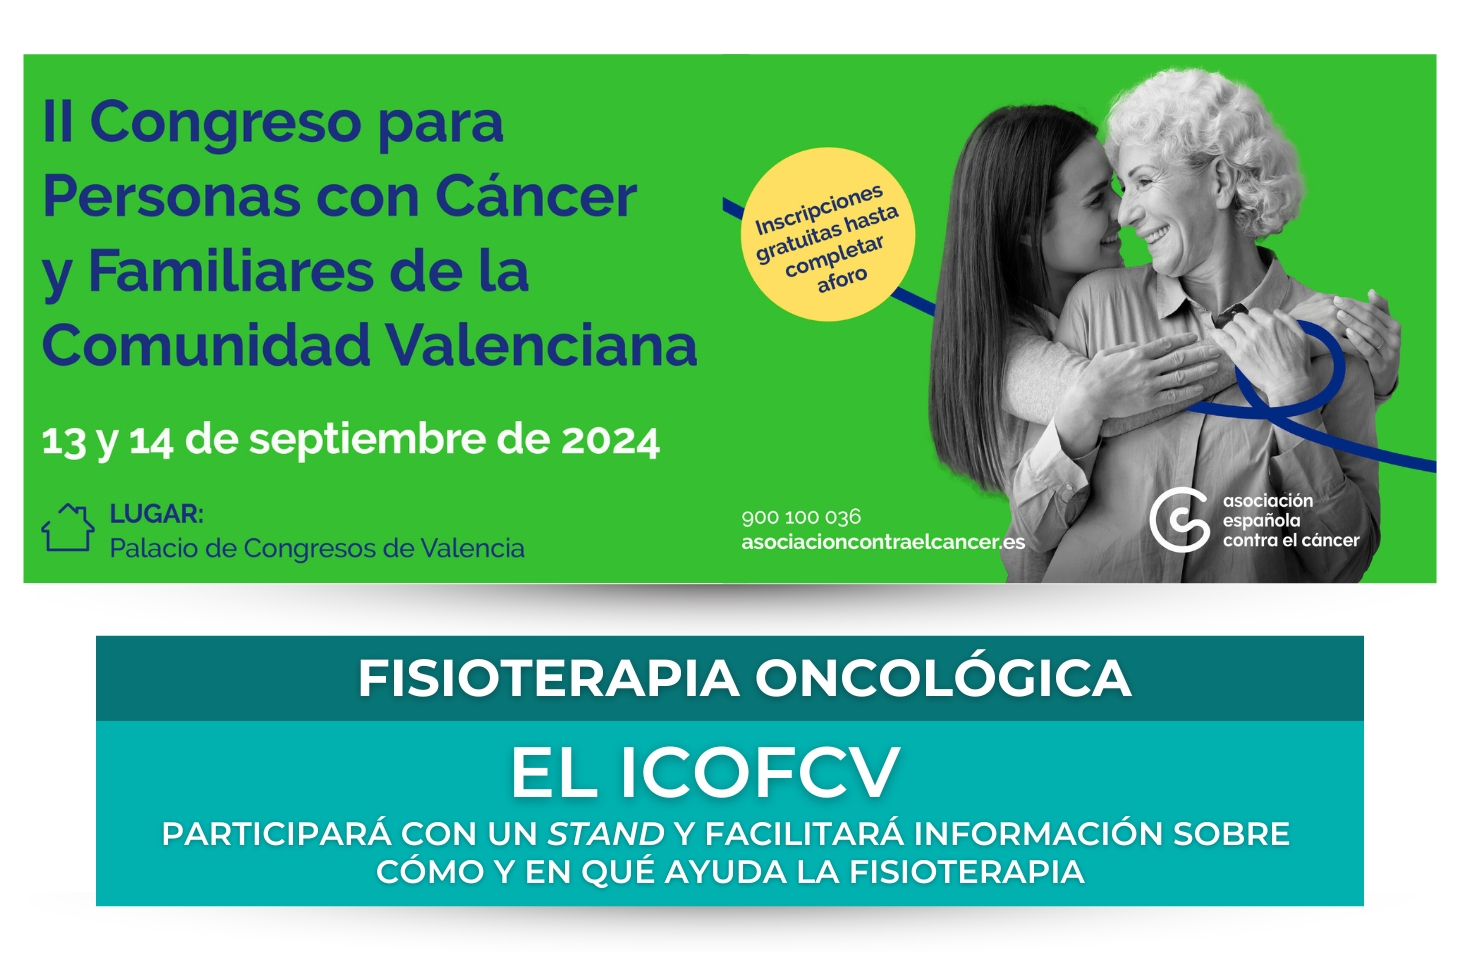 El ICOFCV participará en el II Congreso para Personas con Cáncer y Familiares de la AECC Comunidad Valenciana